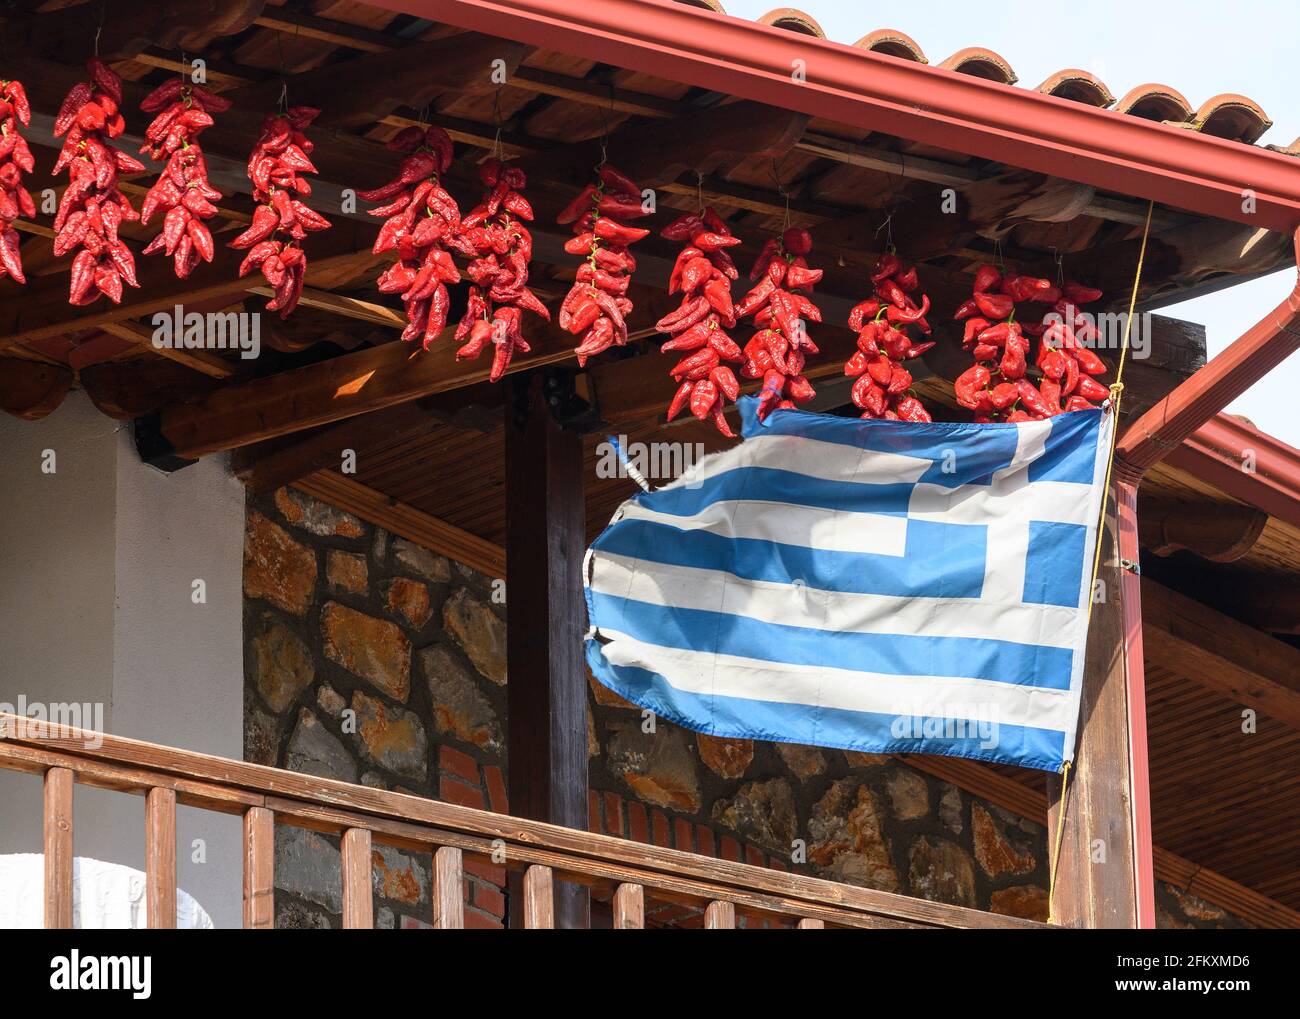 Chilischoten trocknen und eine griechische Flagge fliegen, auf dem Balkon eines Hauses im Fischerdorf Psarades am Prespa-See, Mazedonien, Nord-Greec Stockfoto